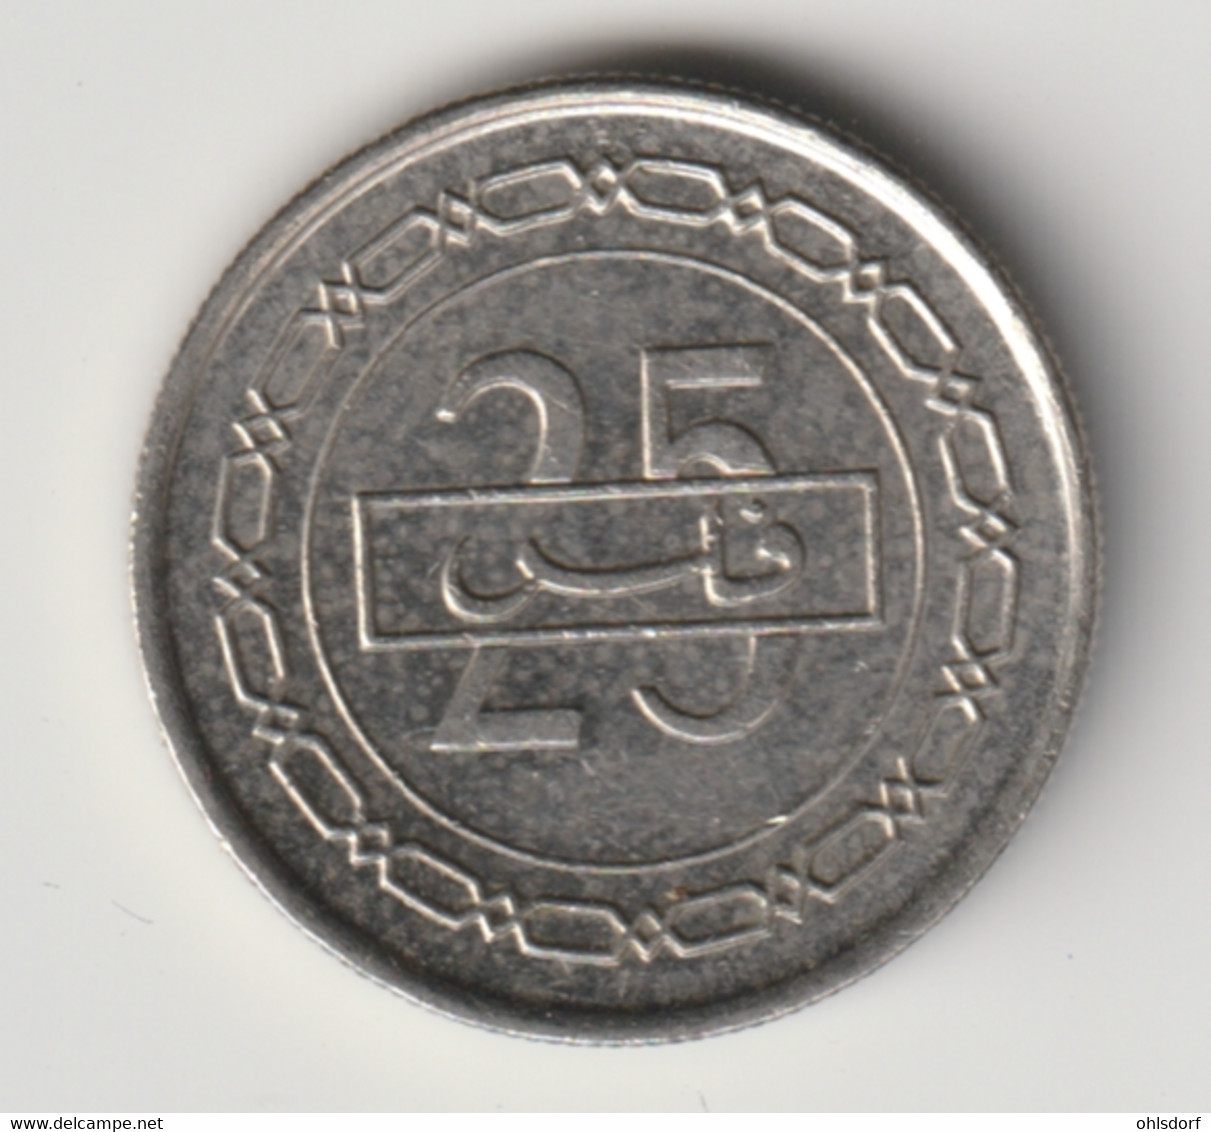 BAHRAIN 2002: 25 Fils, KM 24.1 - Bahrain